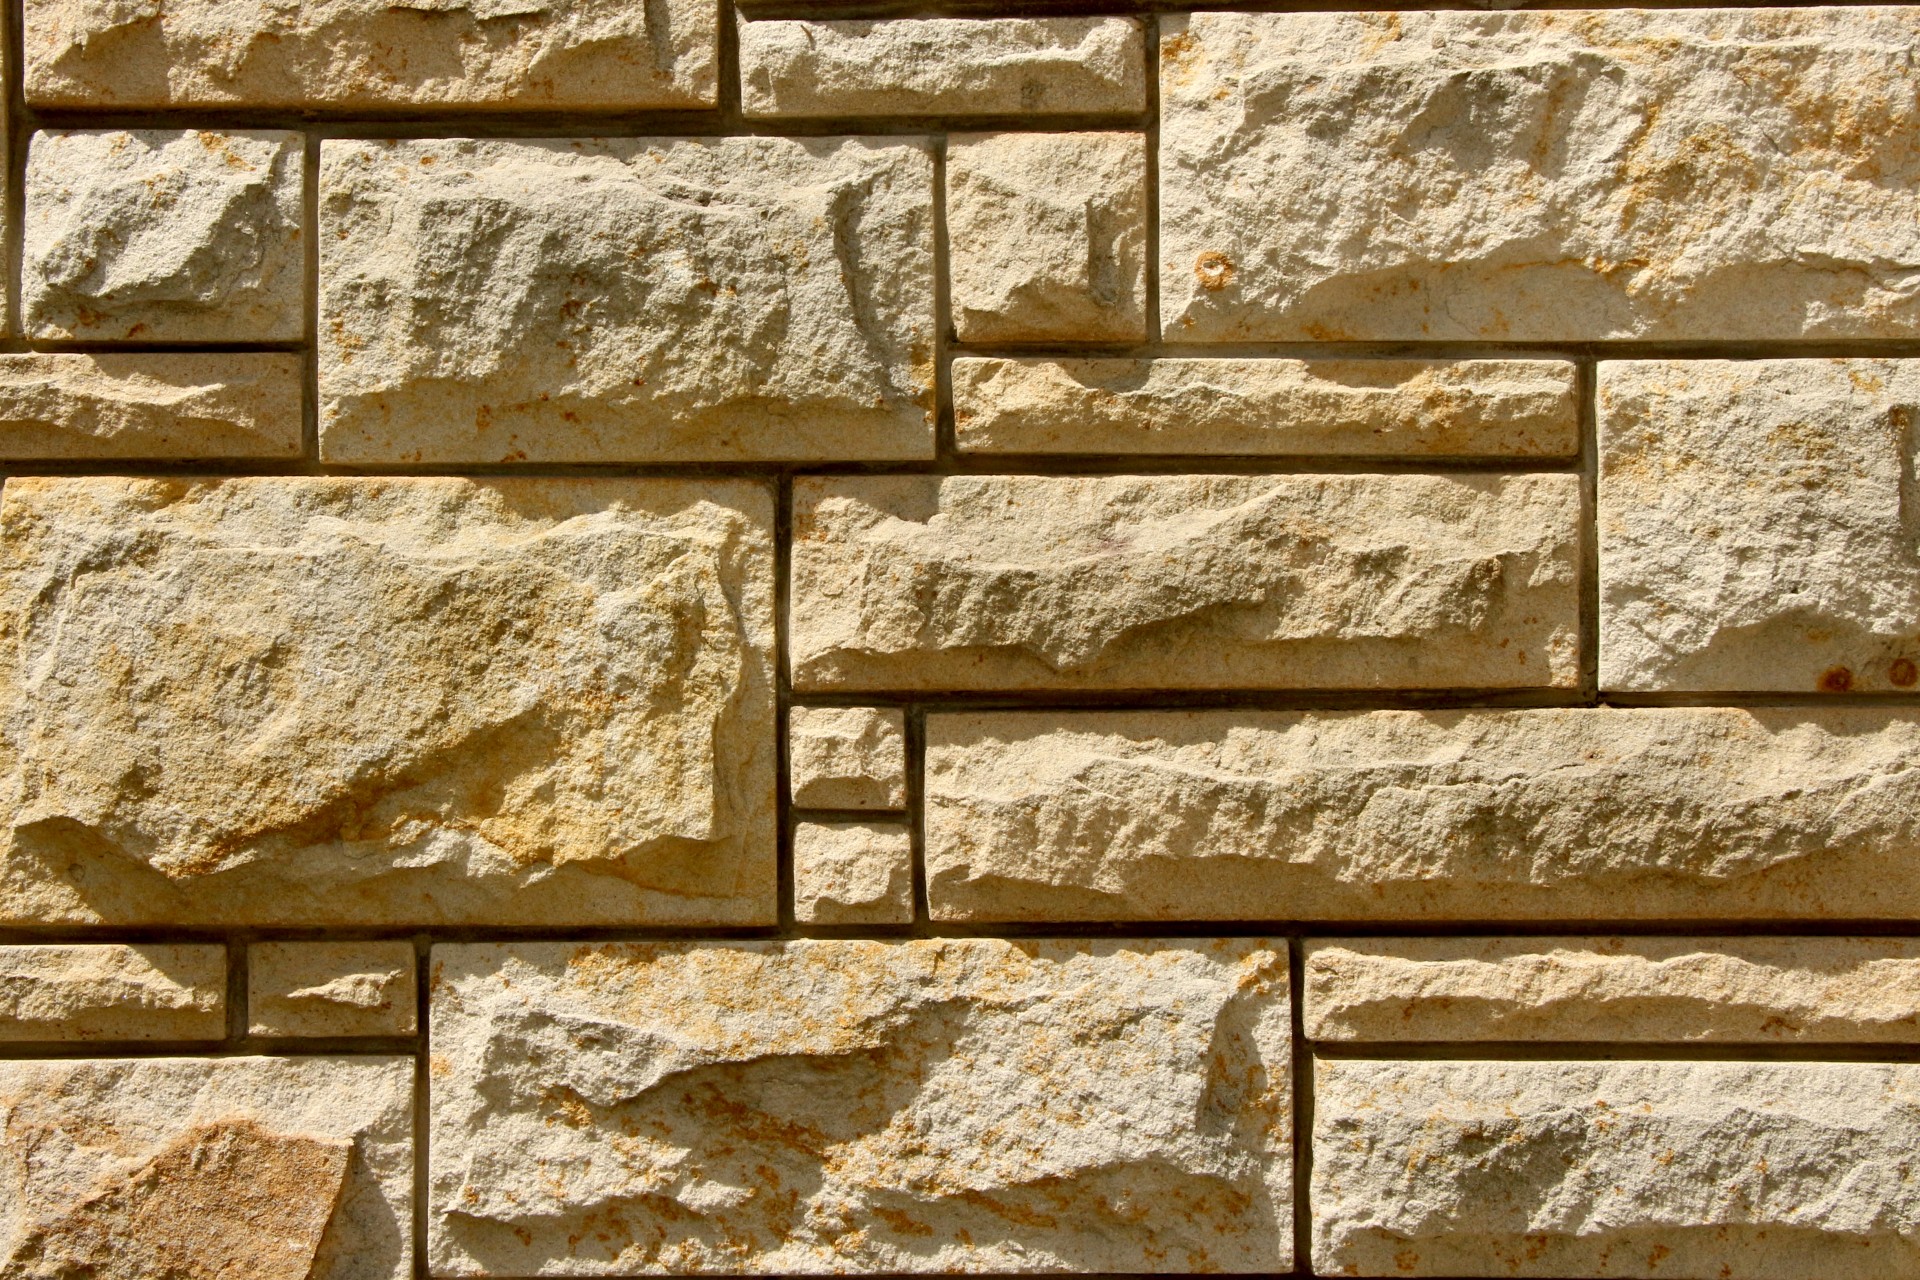 wall stone rock free photo